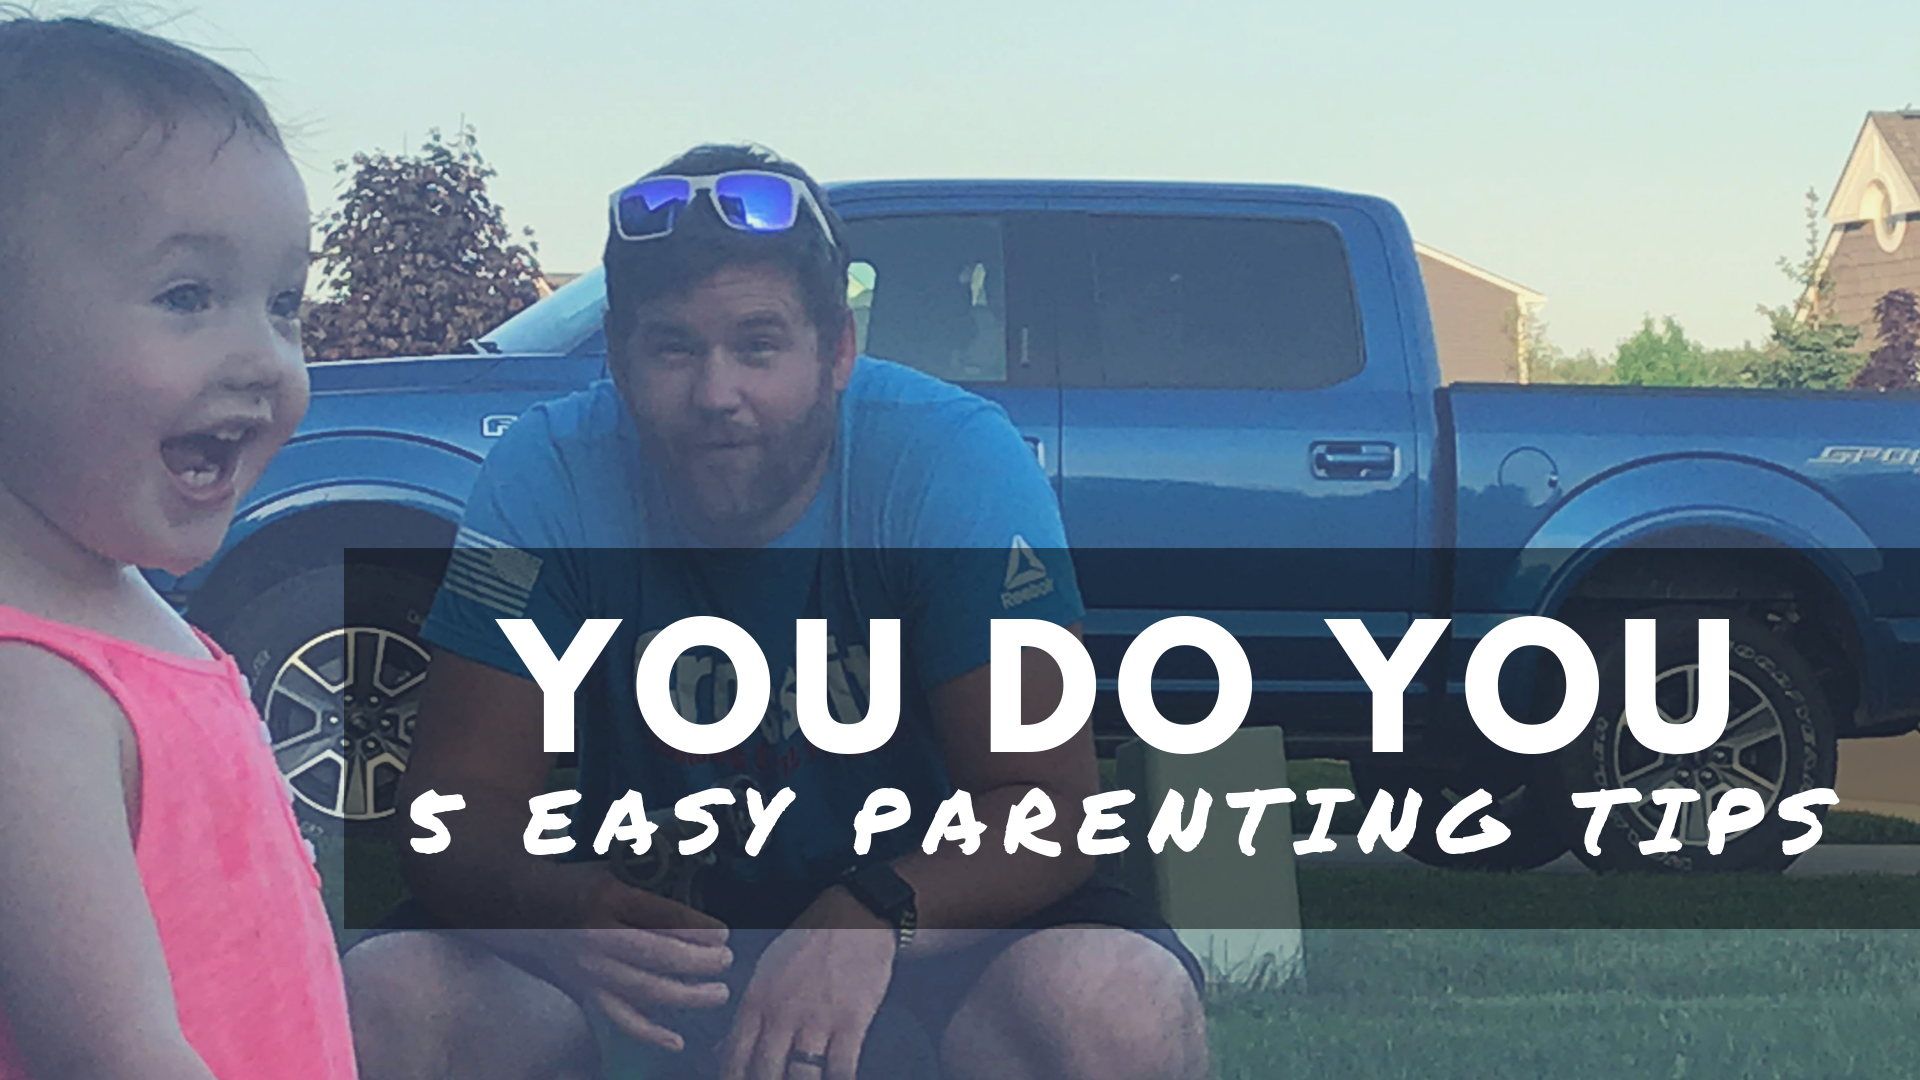 5 Easy Parenting Tips You Do You